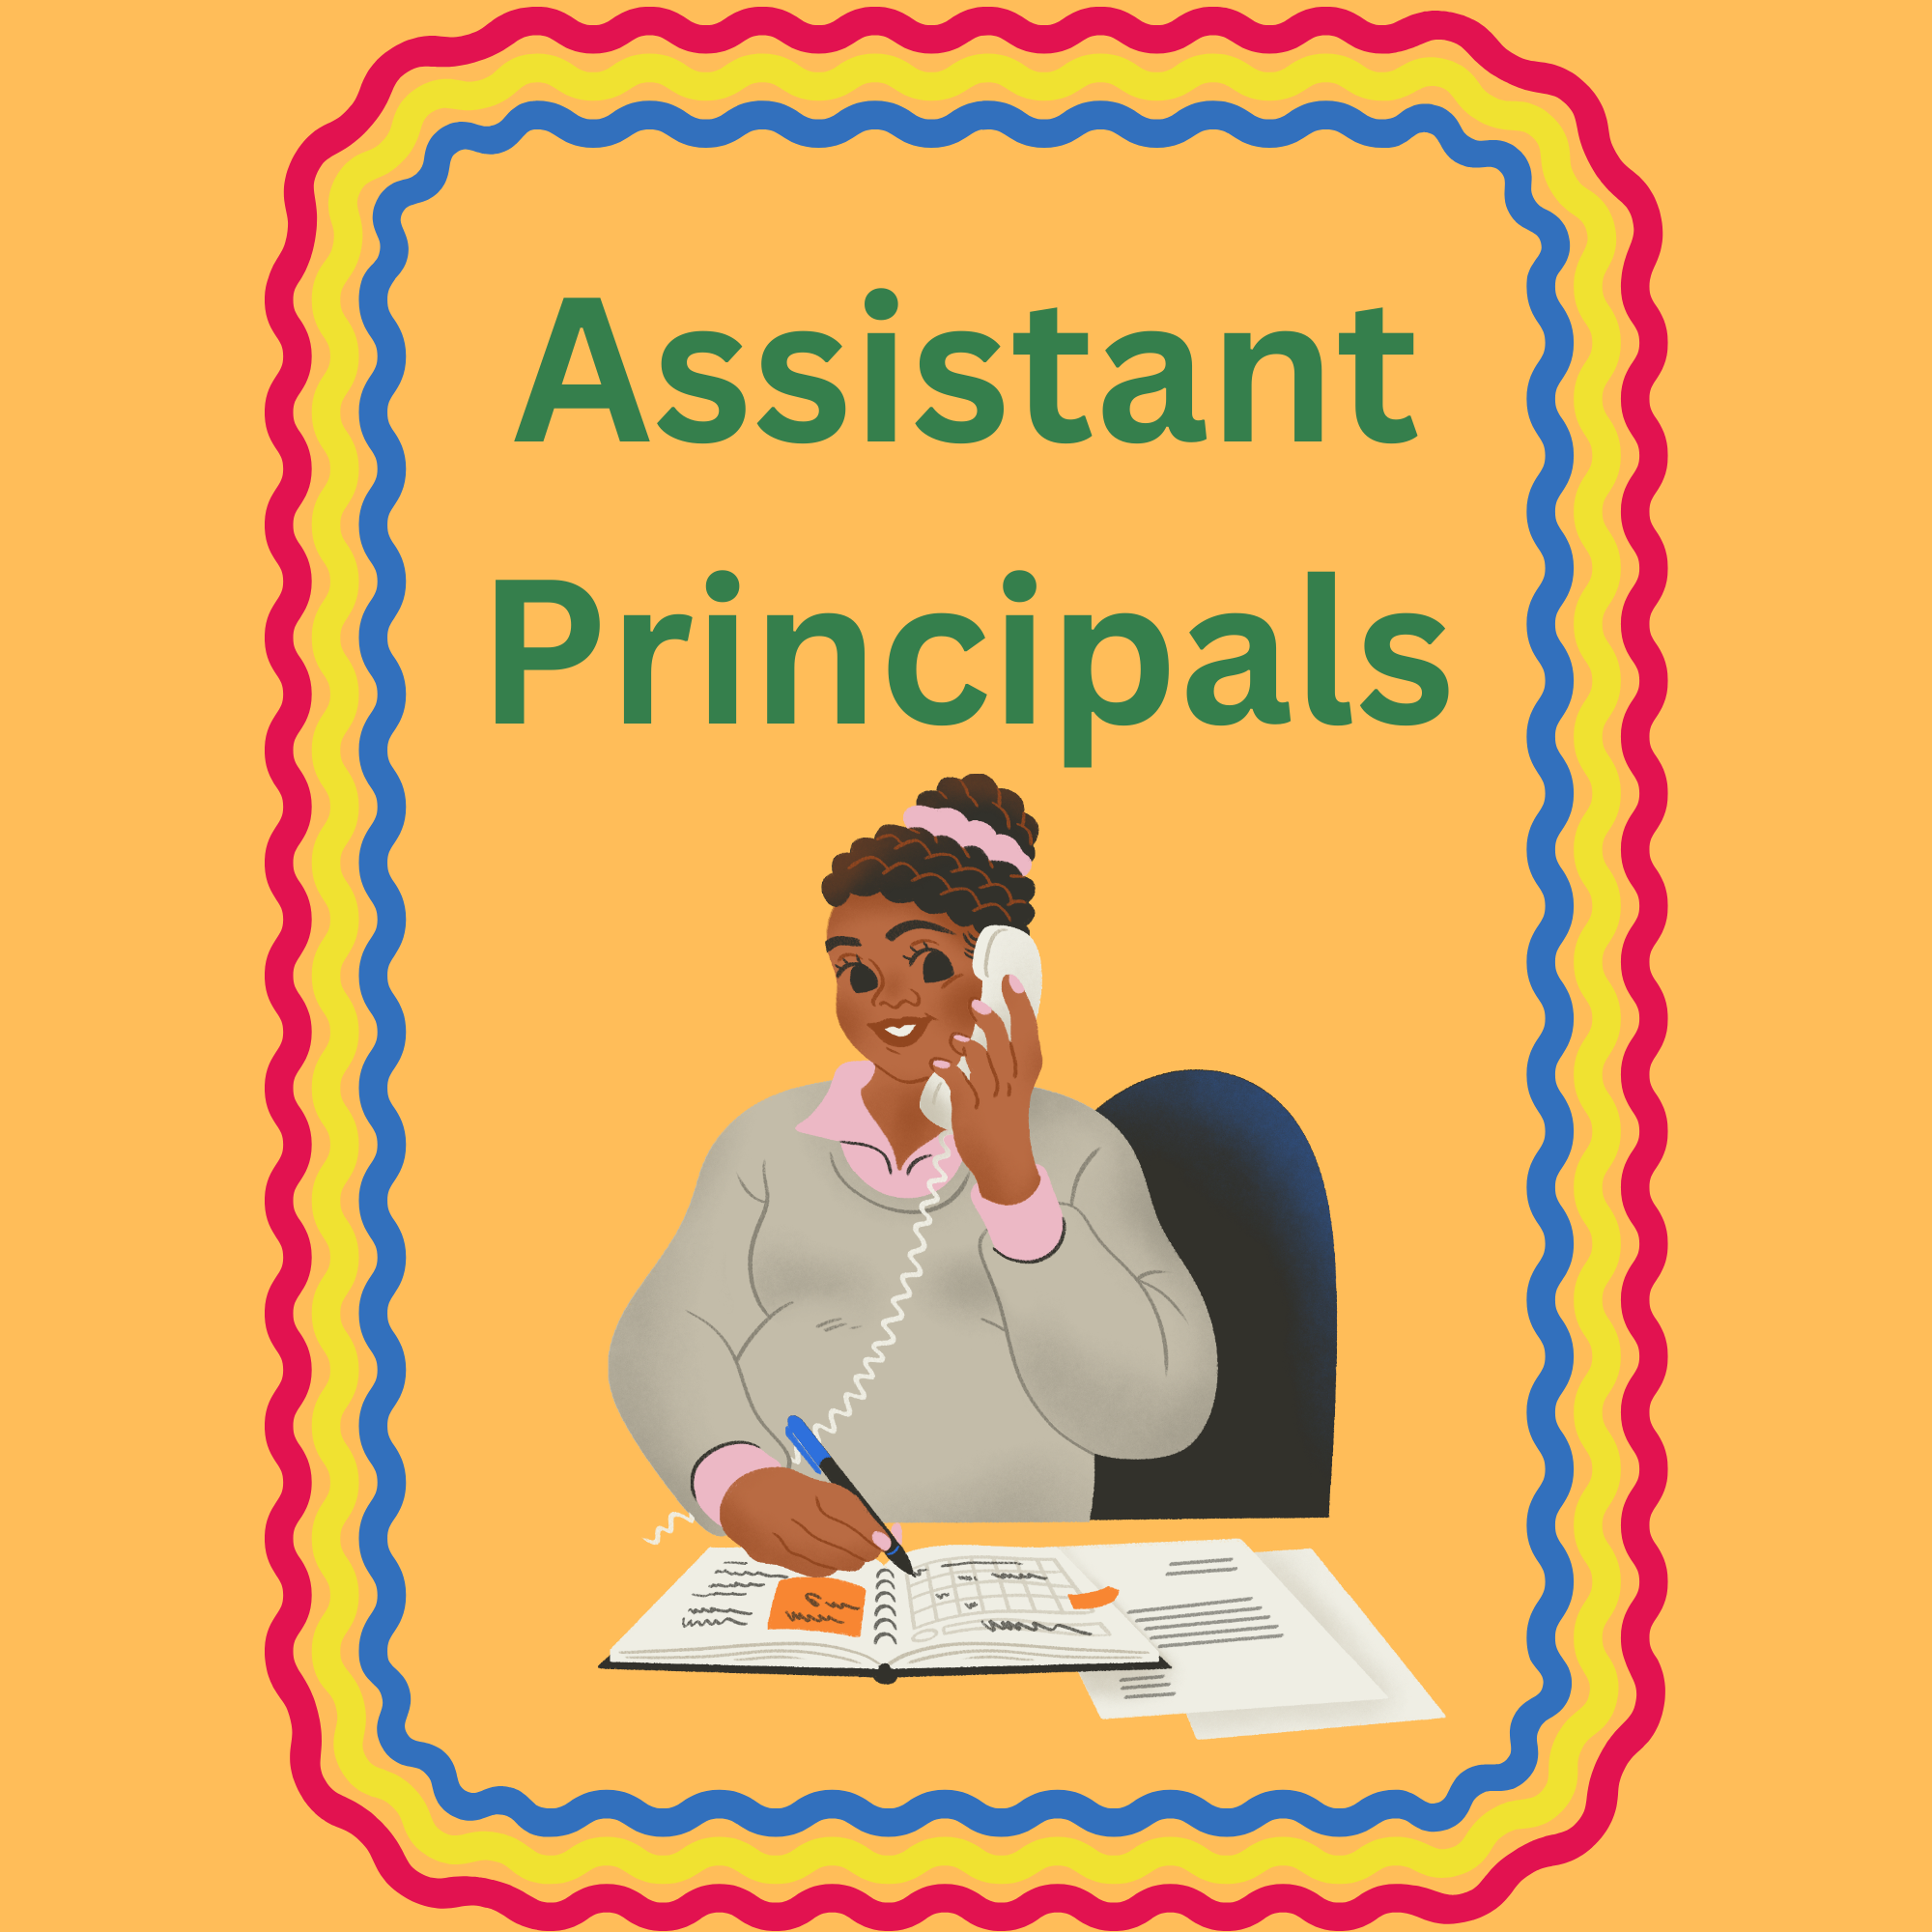 Assistant Principals